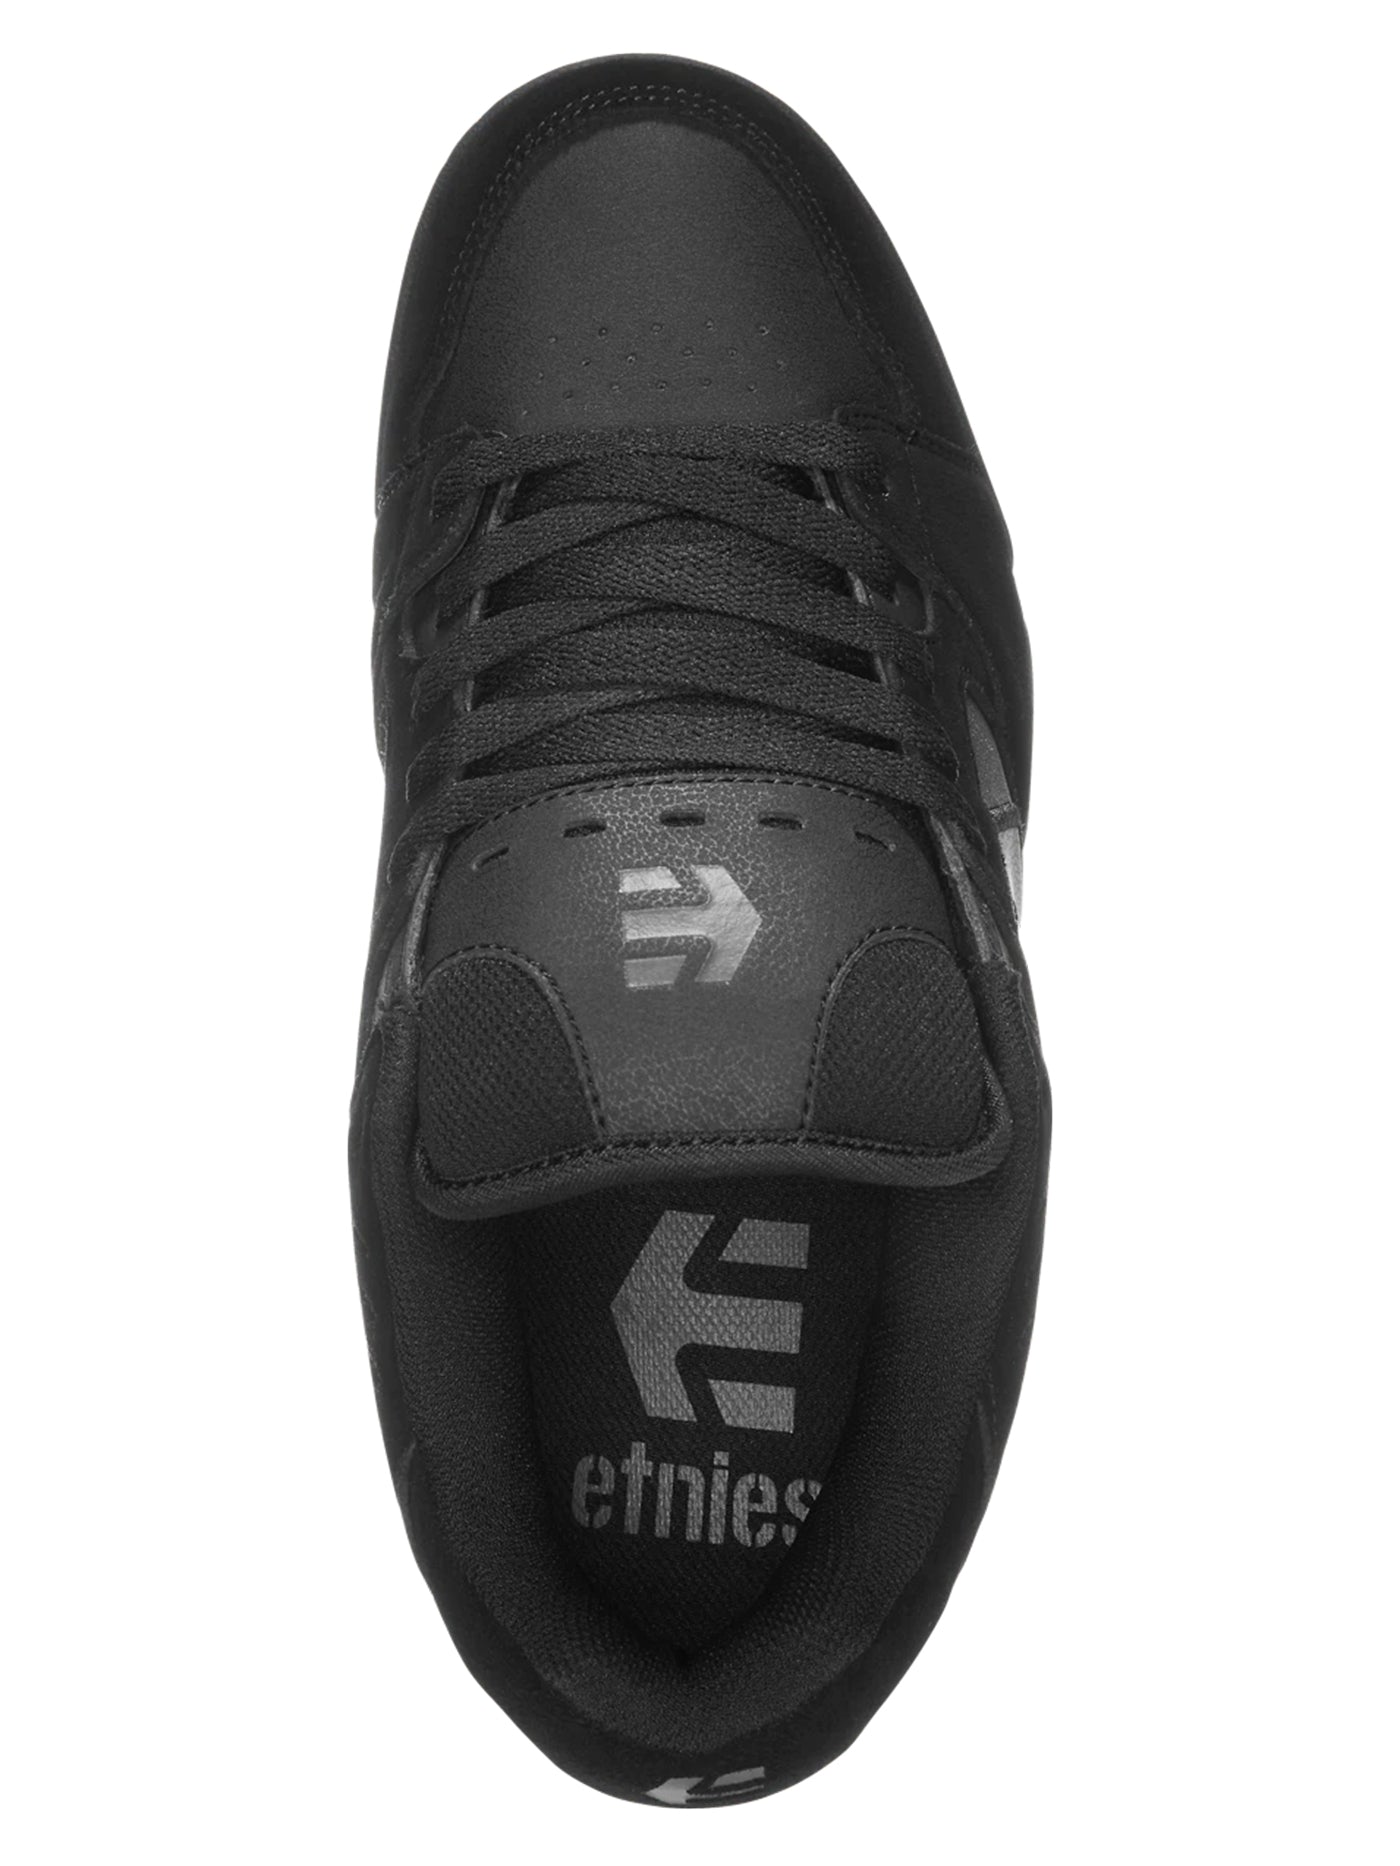 Etnies Faze Black/Black/Gum Shoes